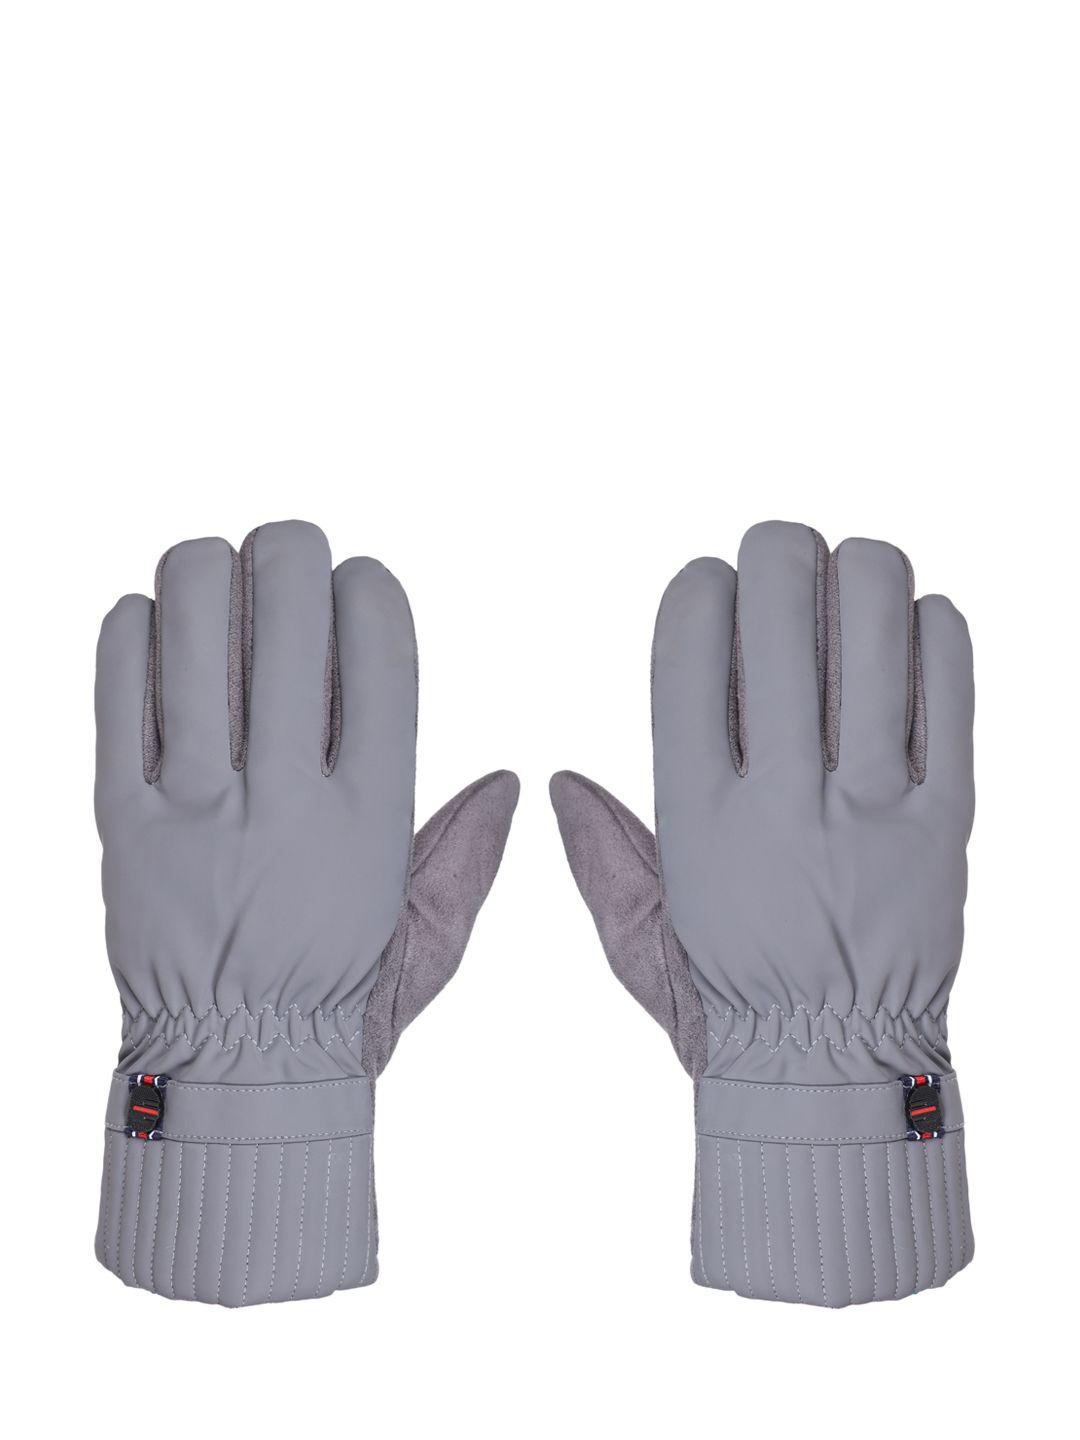 fabseasons unisex grey winter gloves